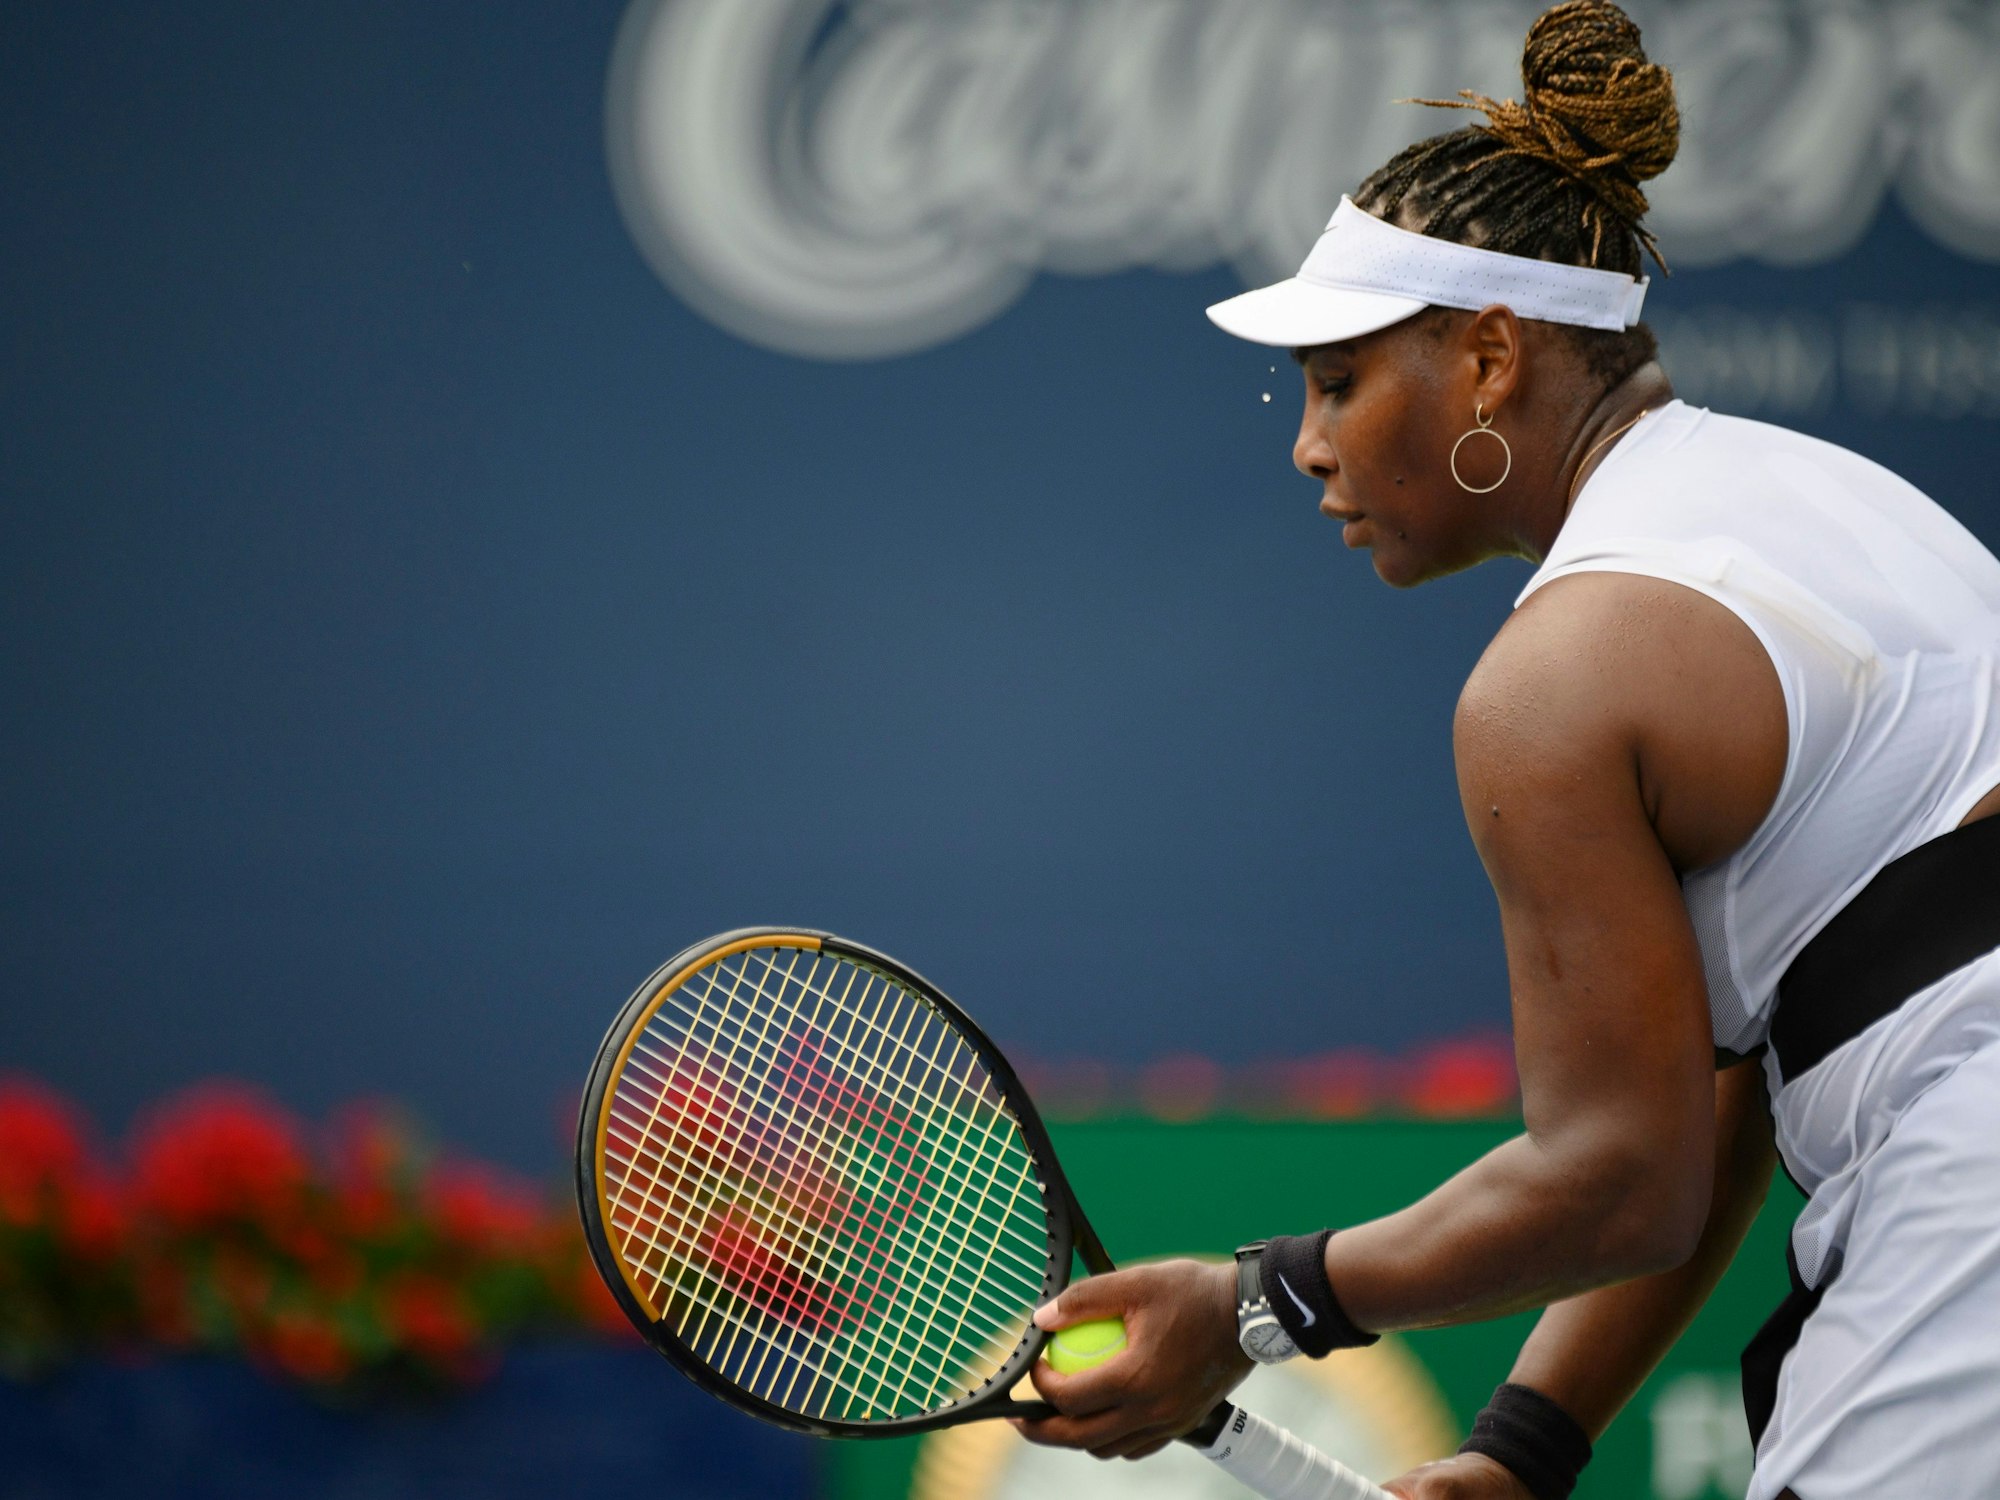 Serena Williams kurz vor dem Aufschlag.